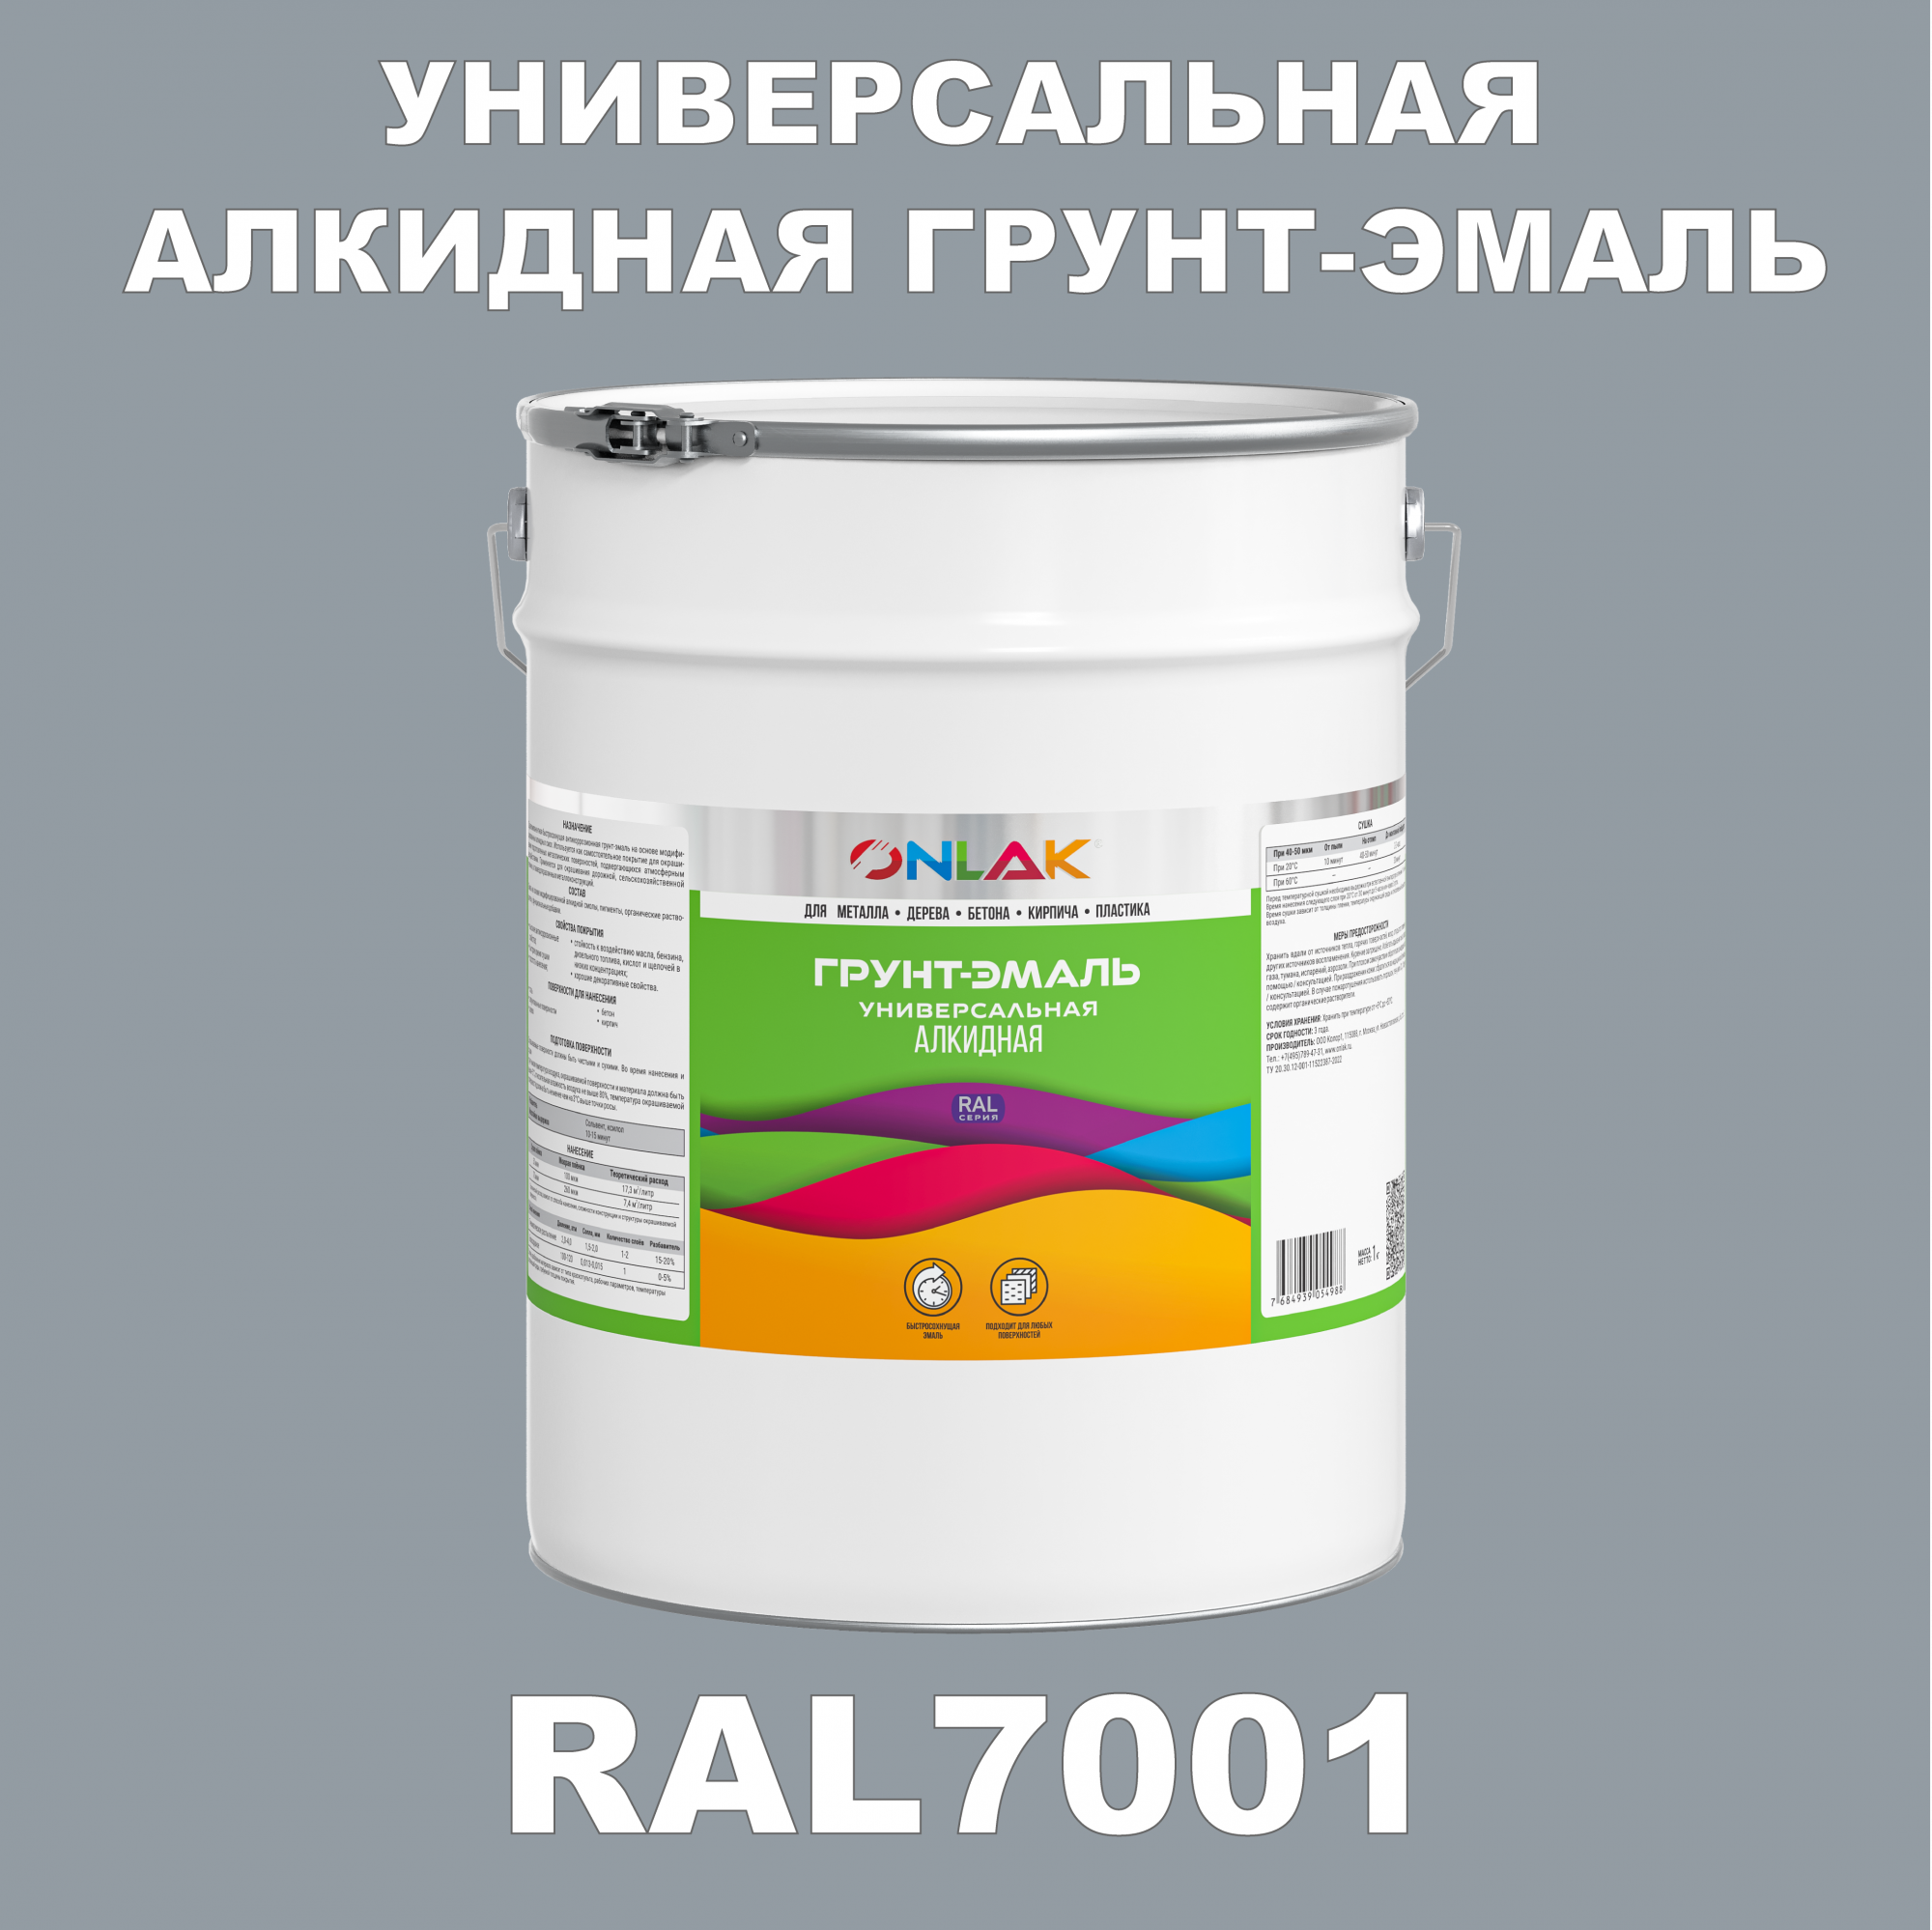 Грунт-эмаль ONLAK 1К RAL7001 антикоррозионная алкидная по металлу по ржавчине 20 кг грунт эмаль yollo по ржавчине алкидная серая 0 9 кг